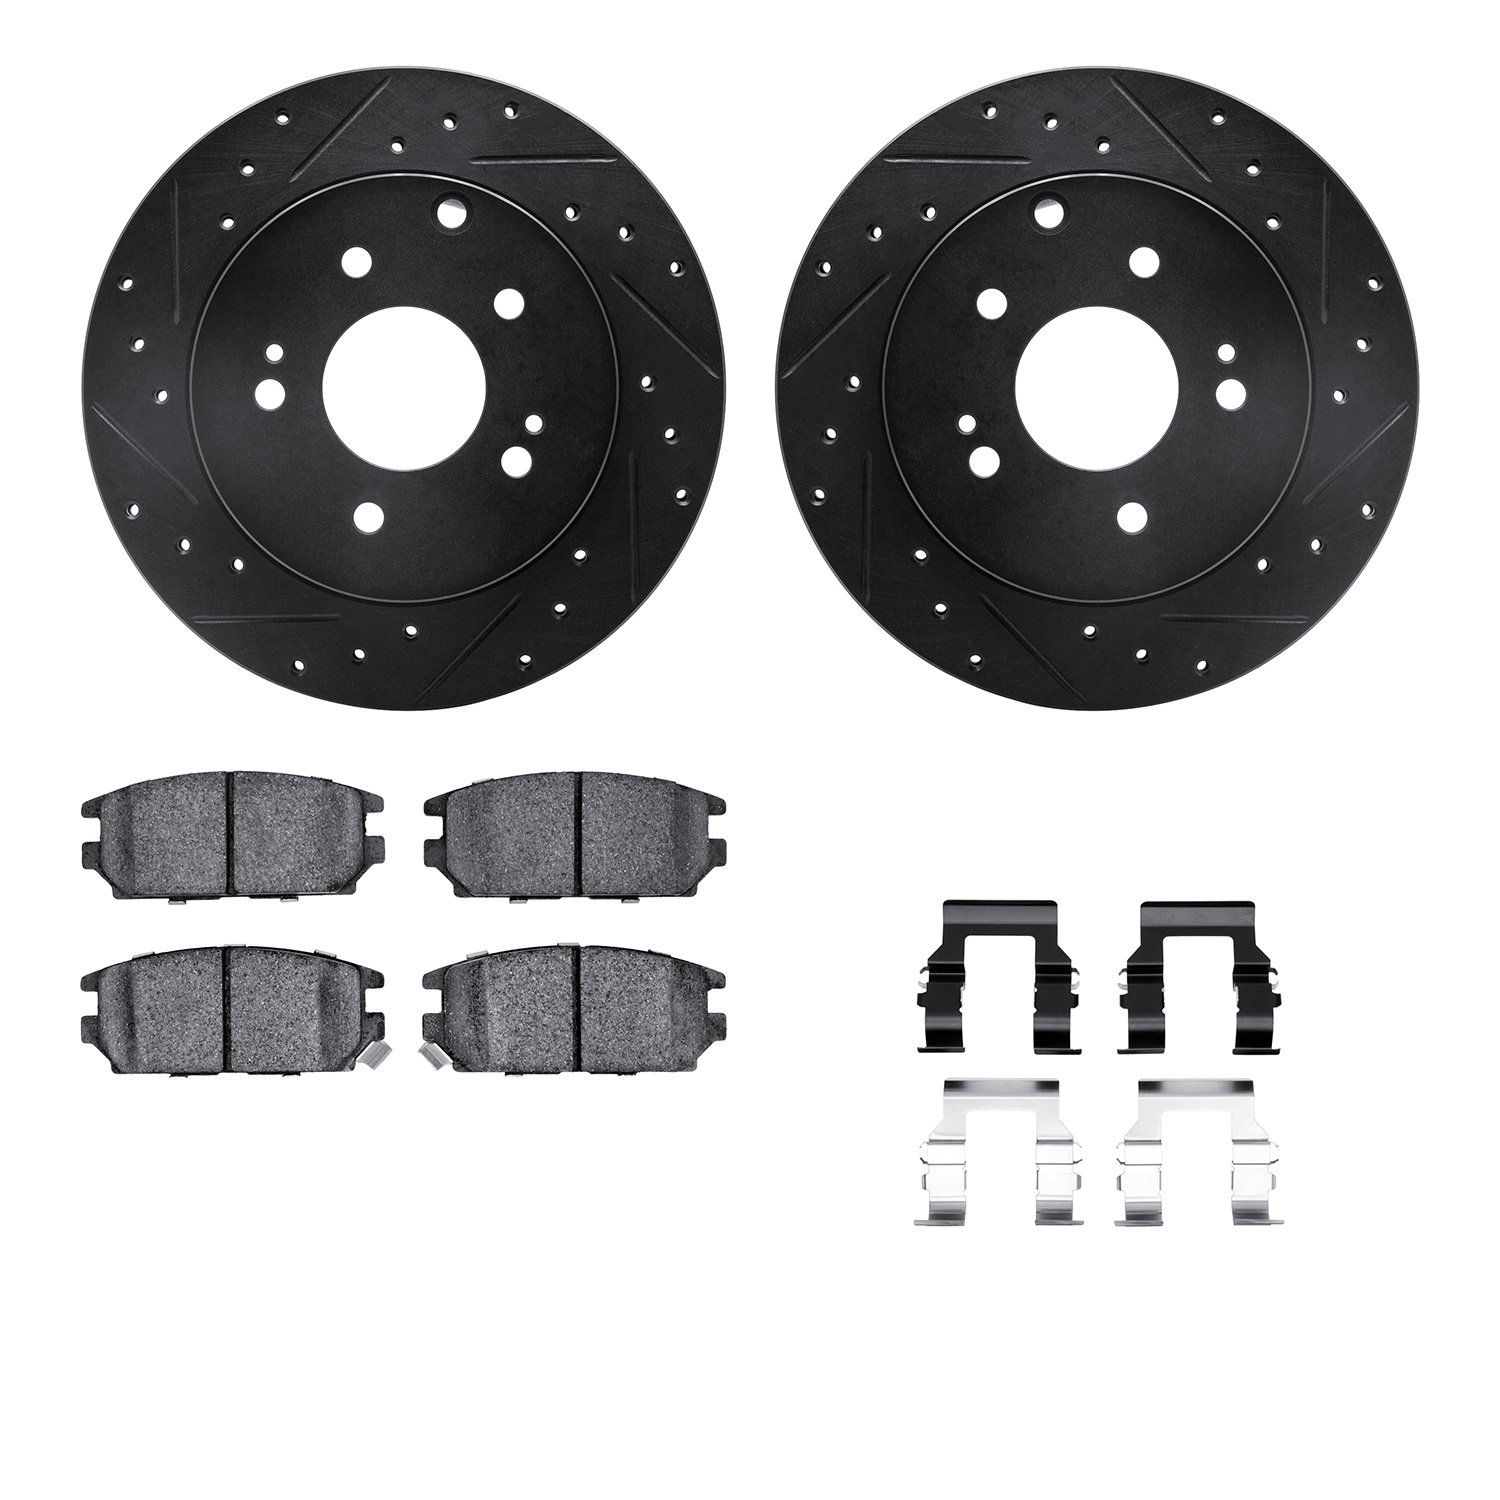 8312-72054 Drilled/Slotted Brake Rotors with 3000-Series Ceramic Brake Pads Kit & Hardware [Black], 2006-2012 Mitsubishi, Positi